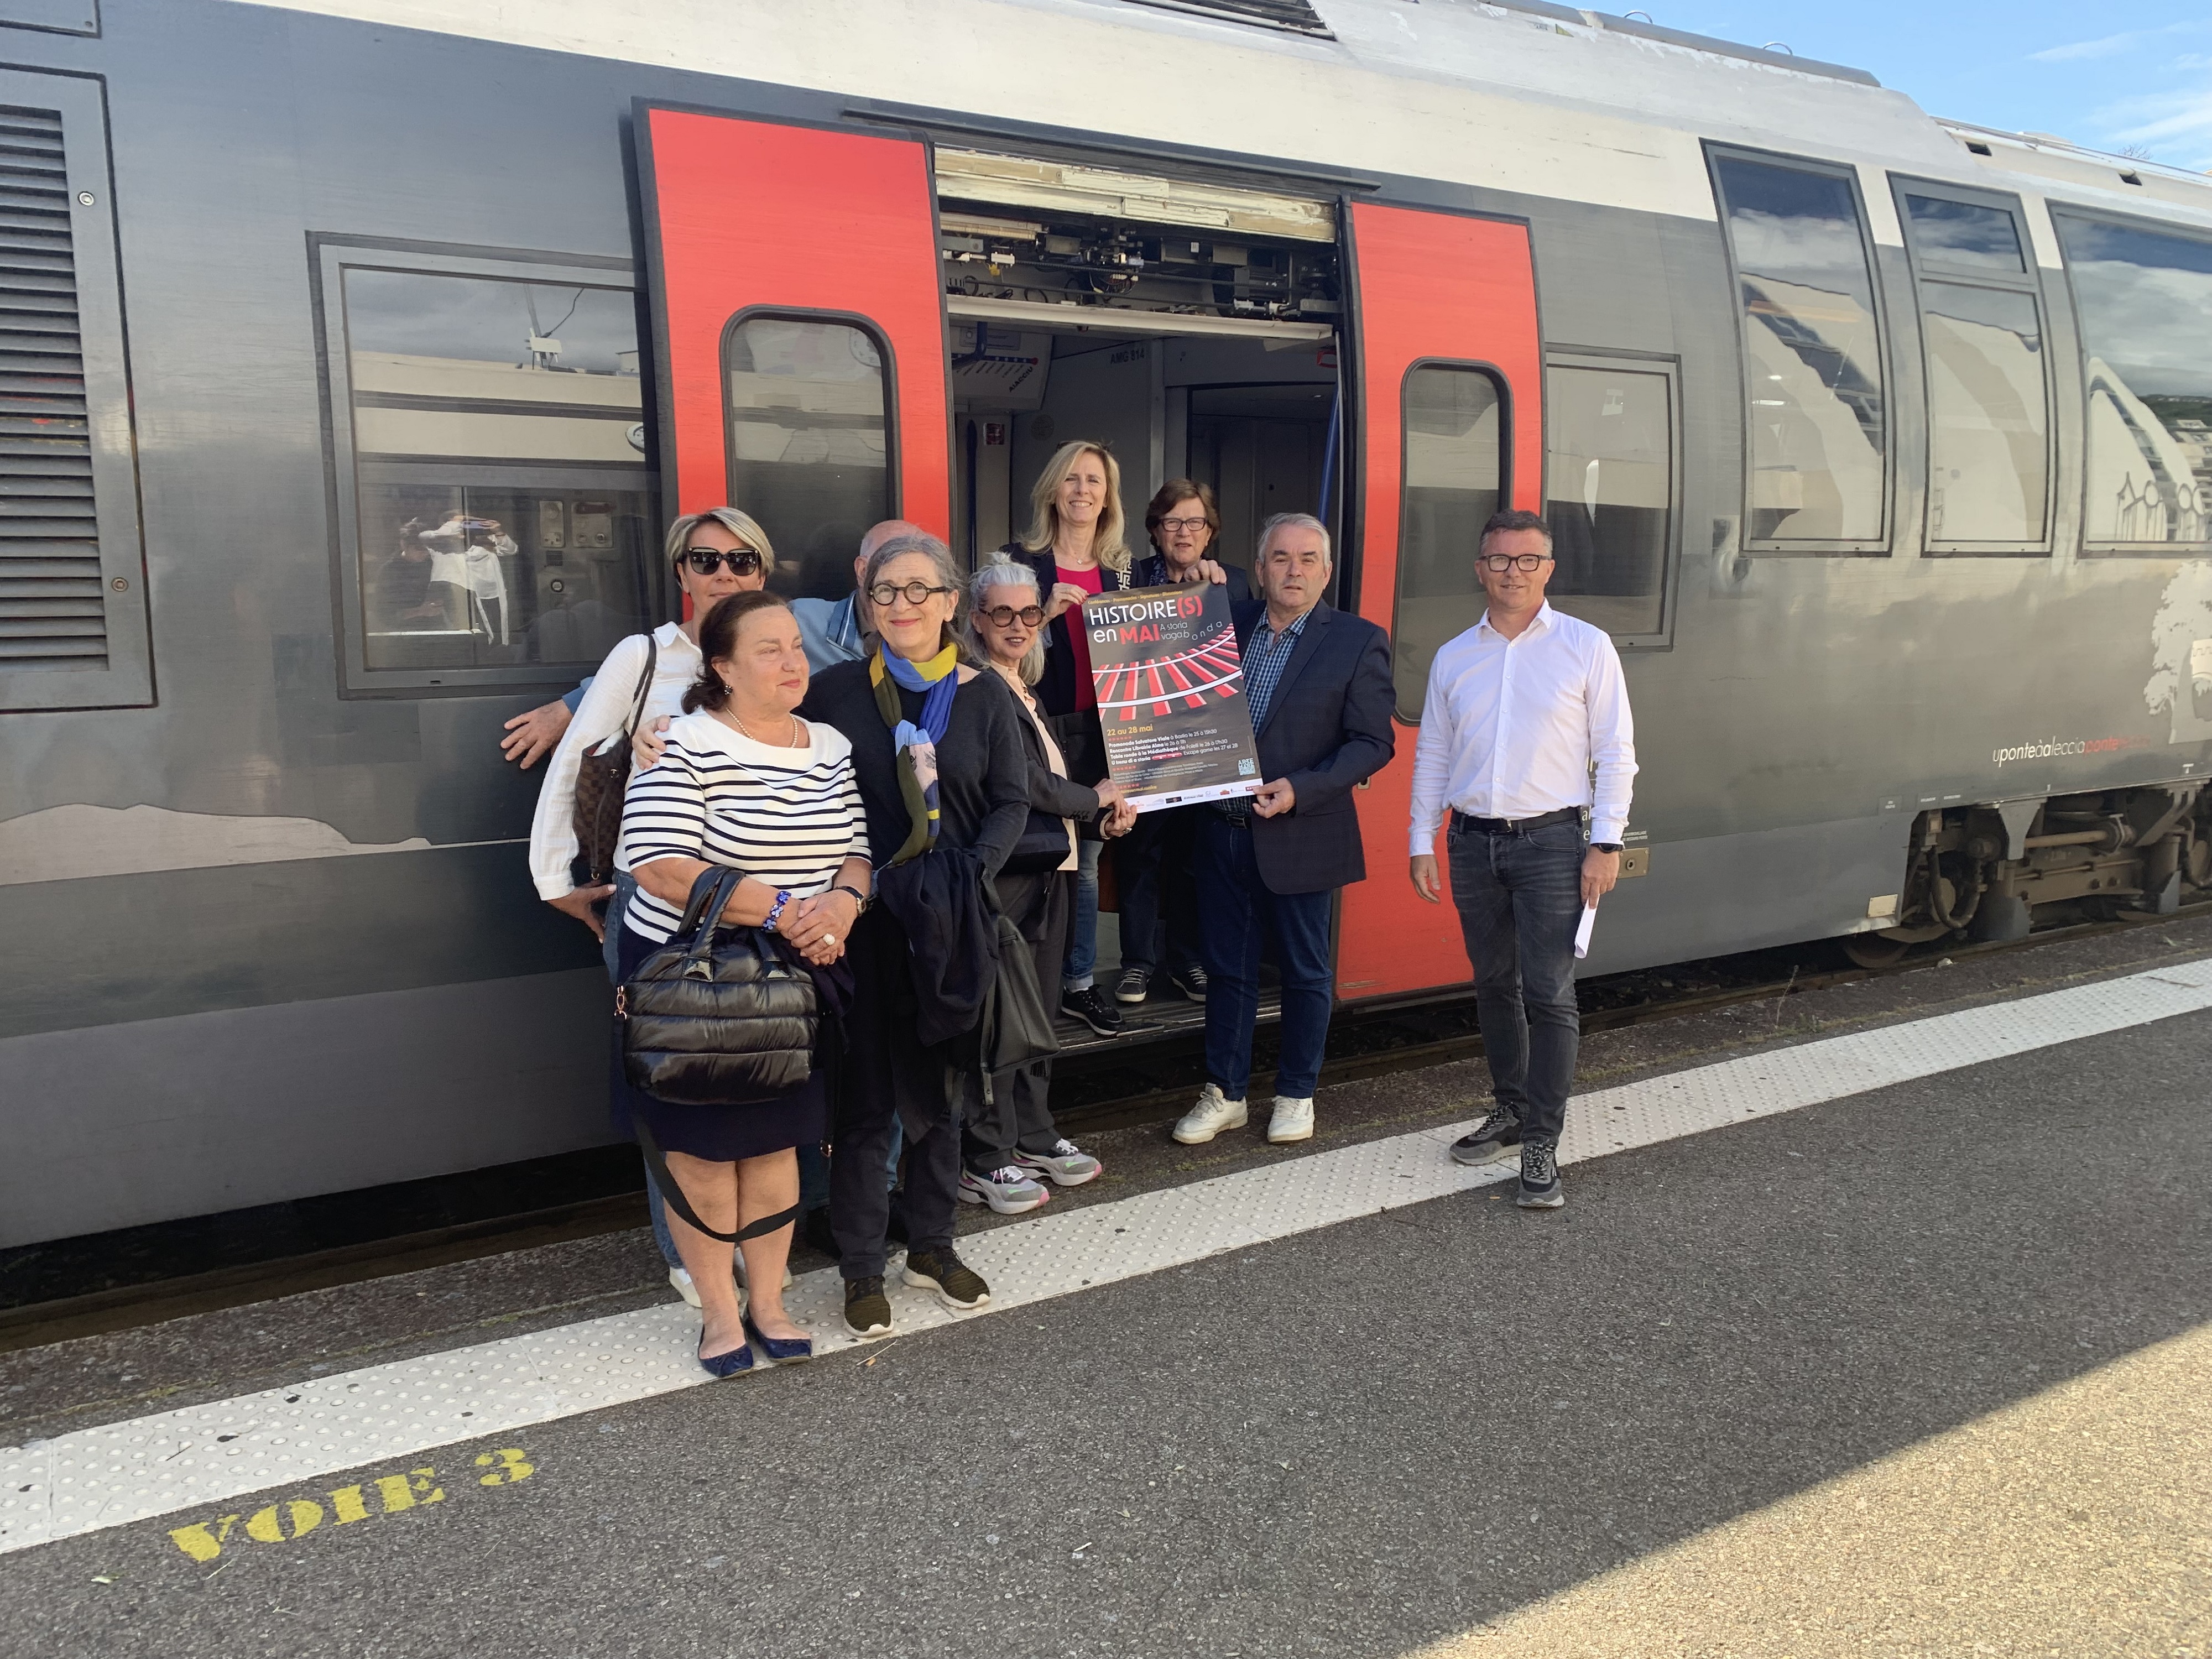 Les organisateurs ont présenté Histoire(s) en mai à la gare de Bastia, les CFC étant partenaires de cette 18ème édition avec une balade littéraire entre Bastia et Ajaccio.